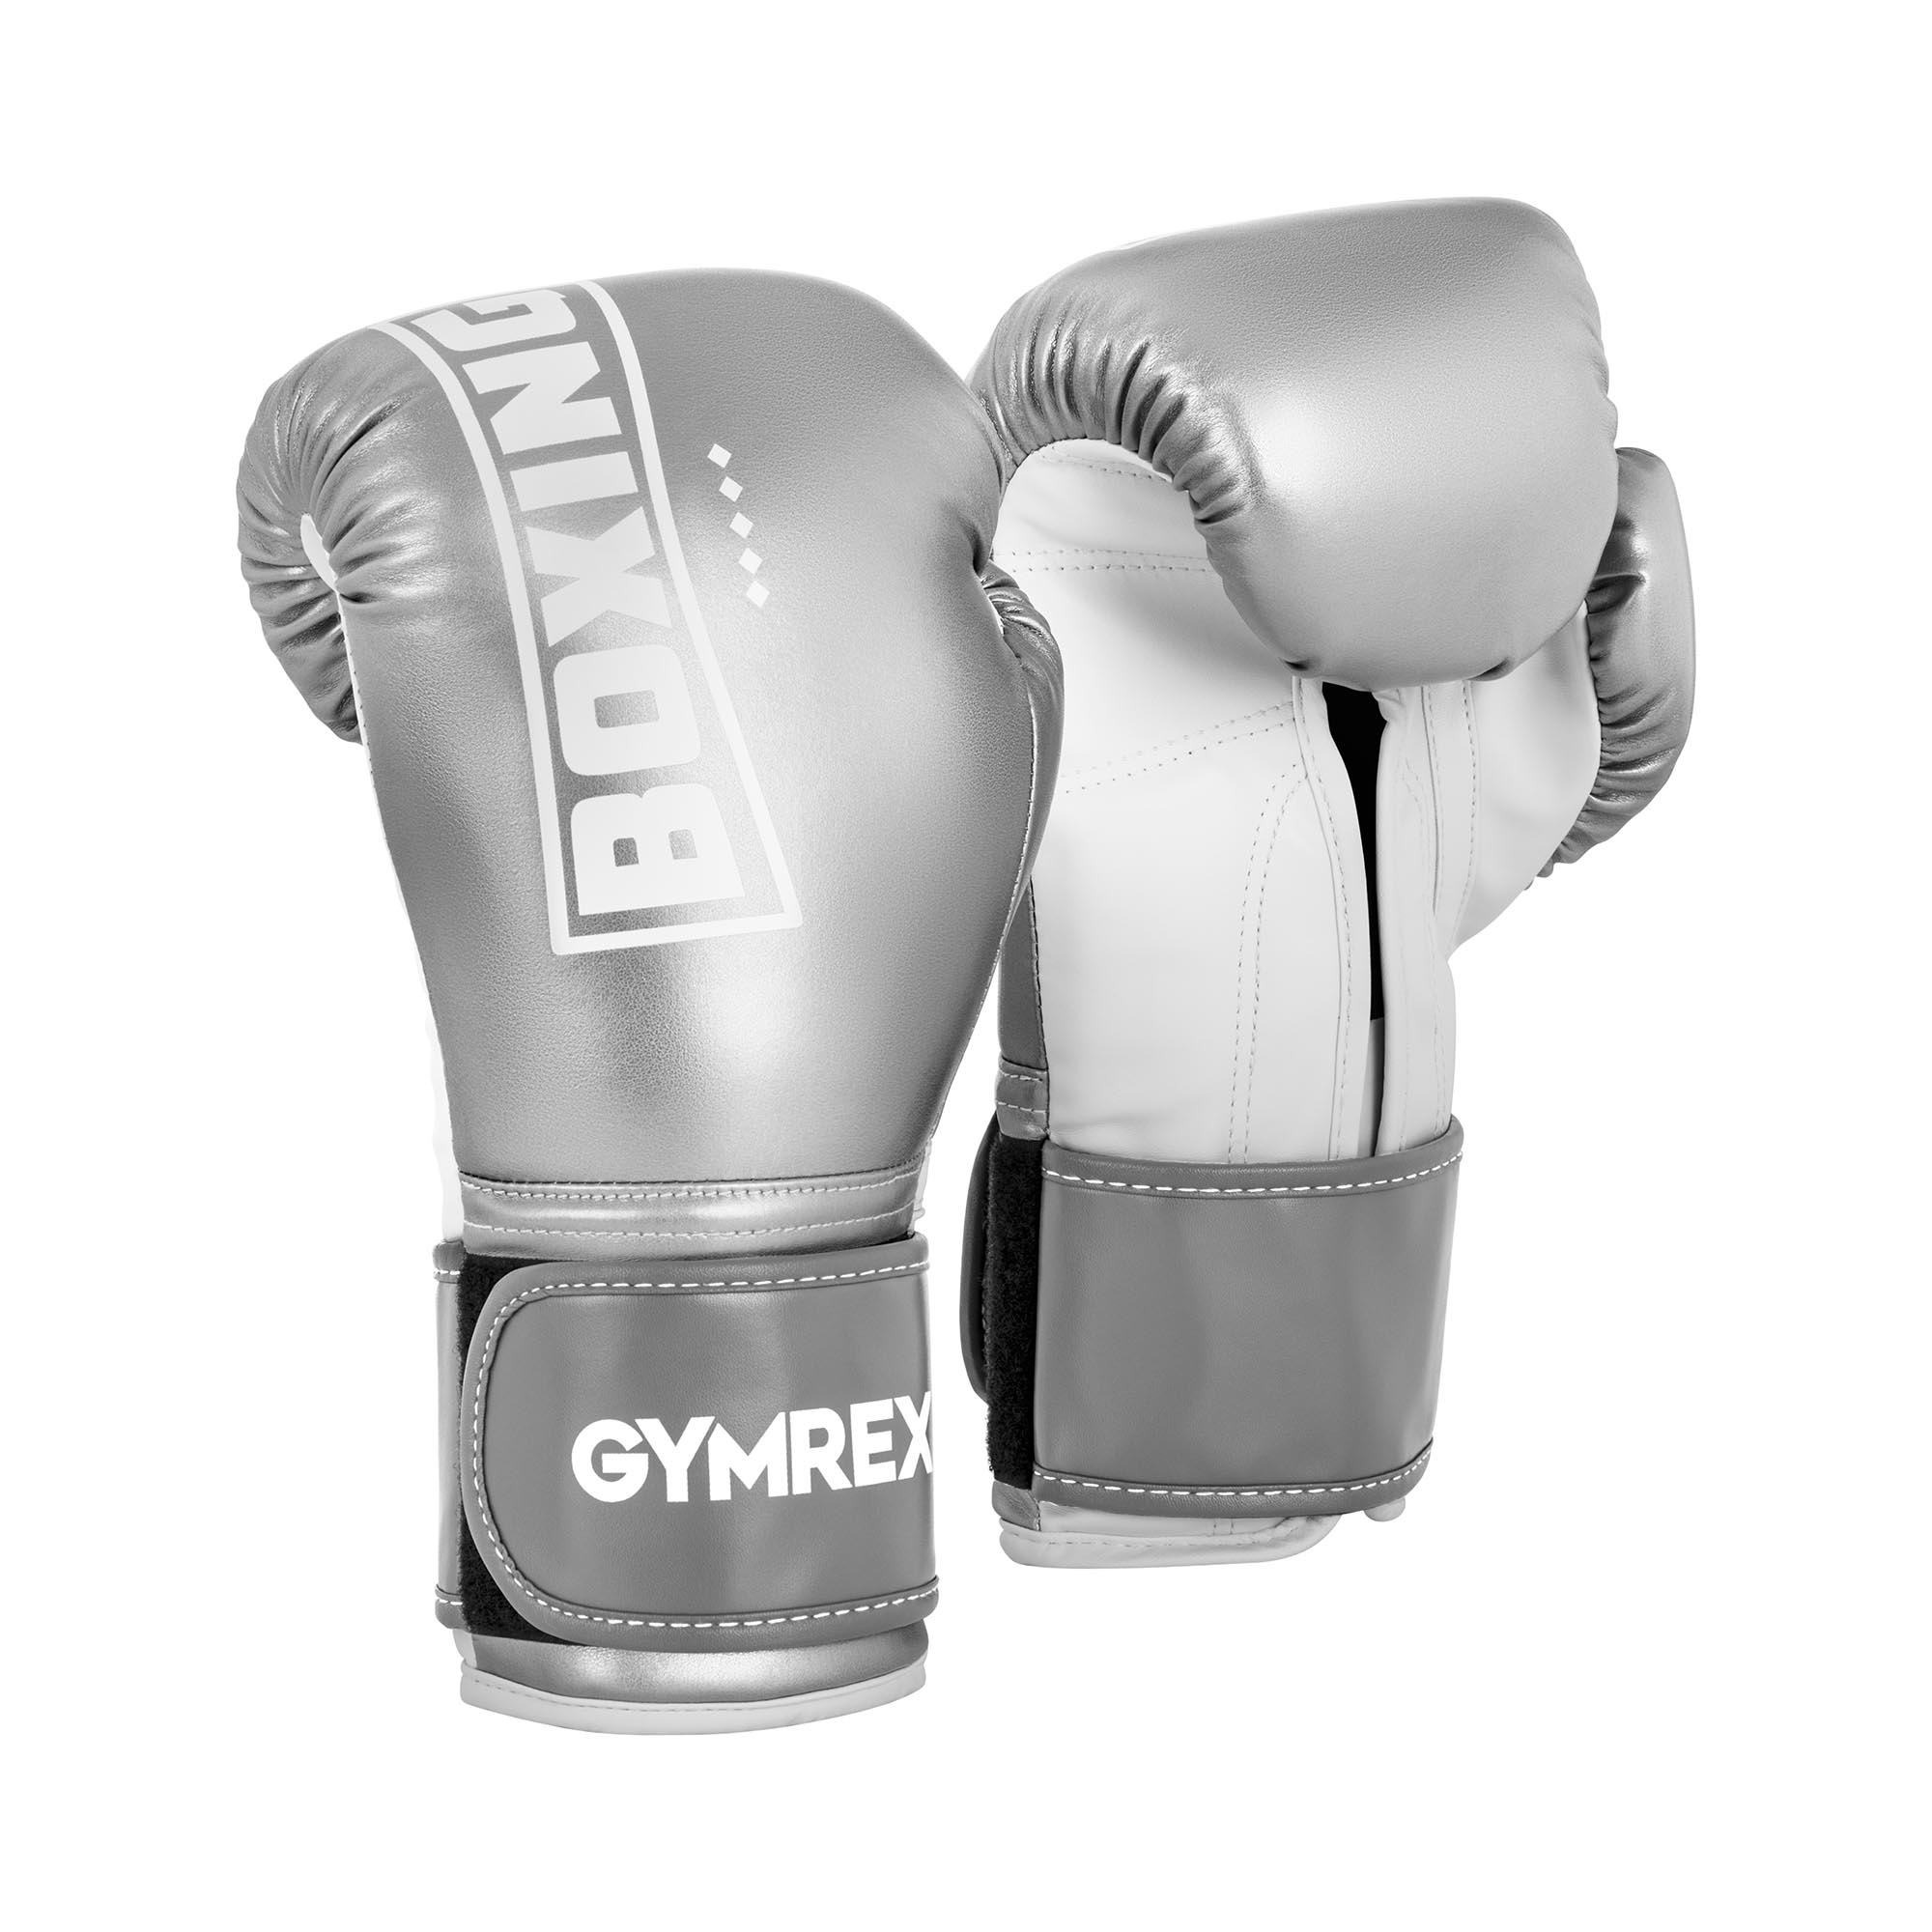 Gymrex Boxhandschuhe - 12 oz - metallic-silbern und weiß